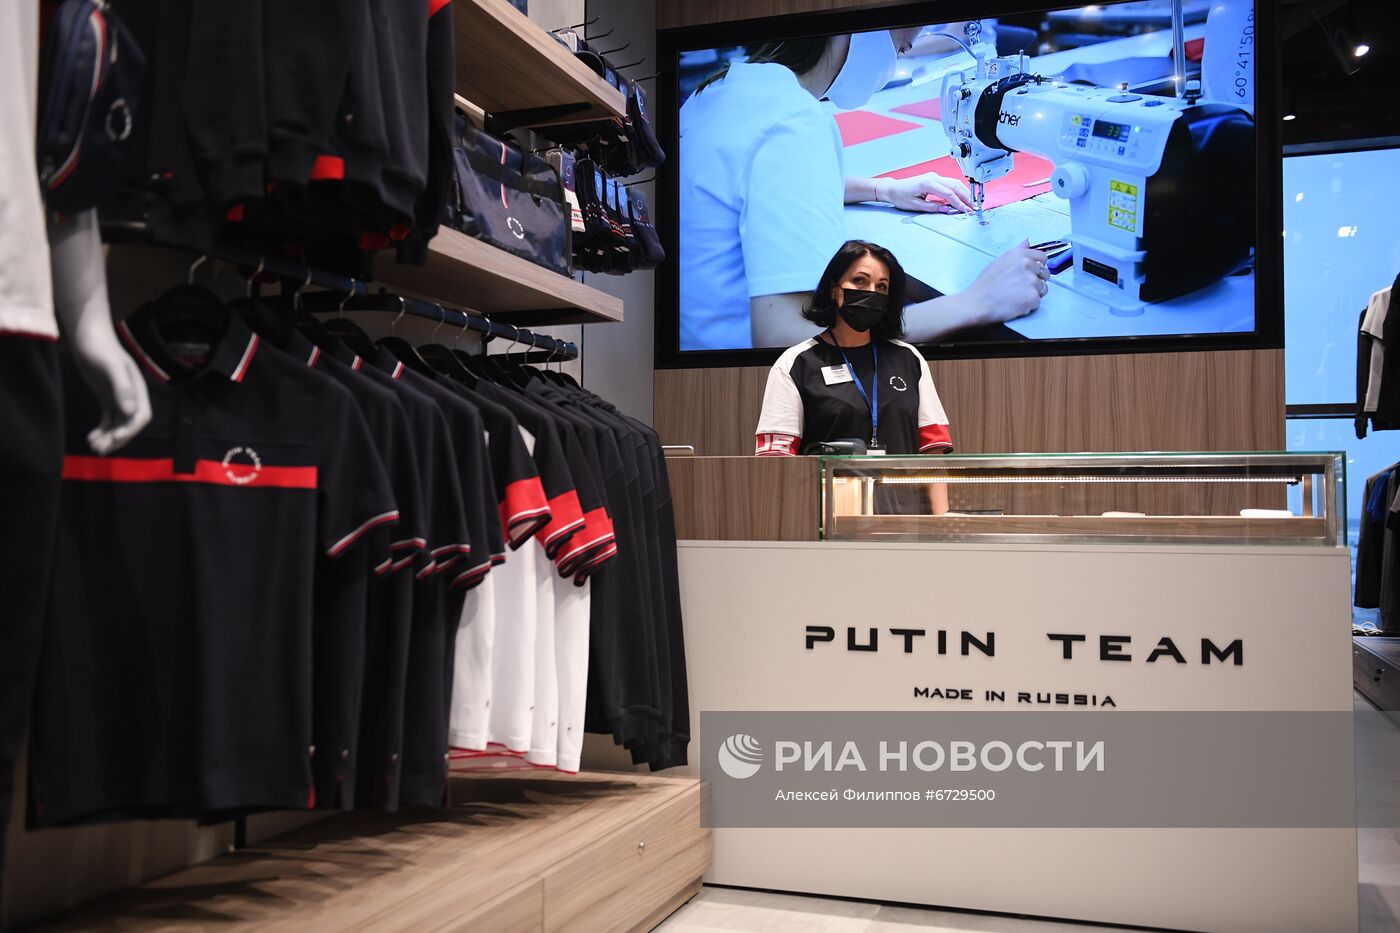 Открытие магазина Putin Team в  аэропорту "Шереметьево"